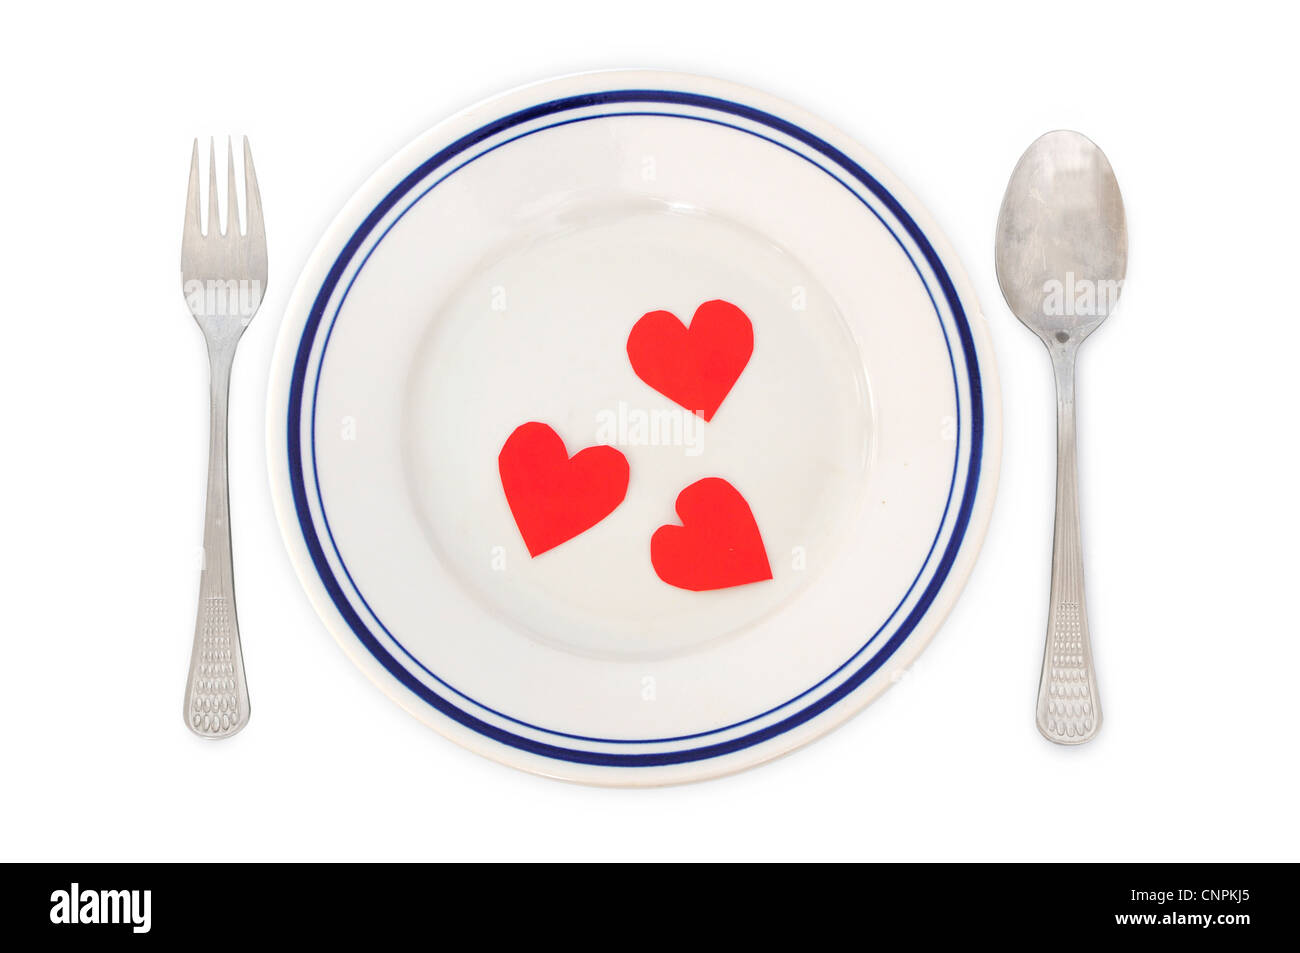 Concetto di amore - a disposizione per la cena con forme di cuore nella piastra Foto Stock